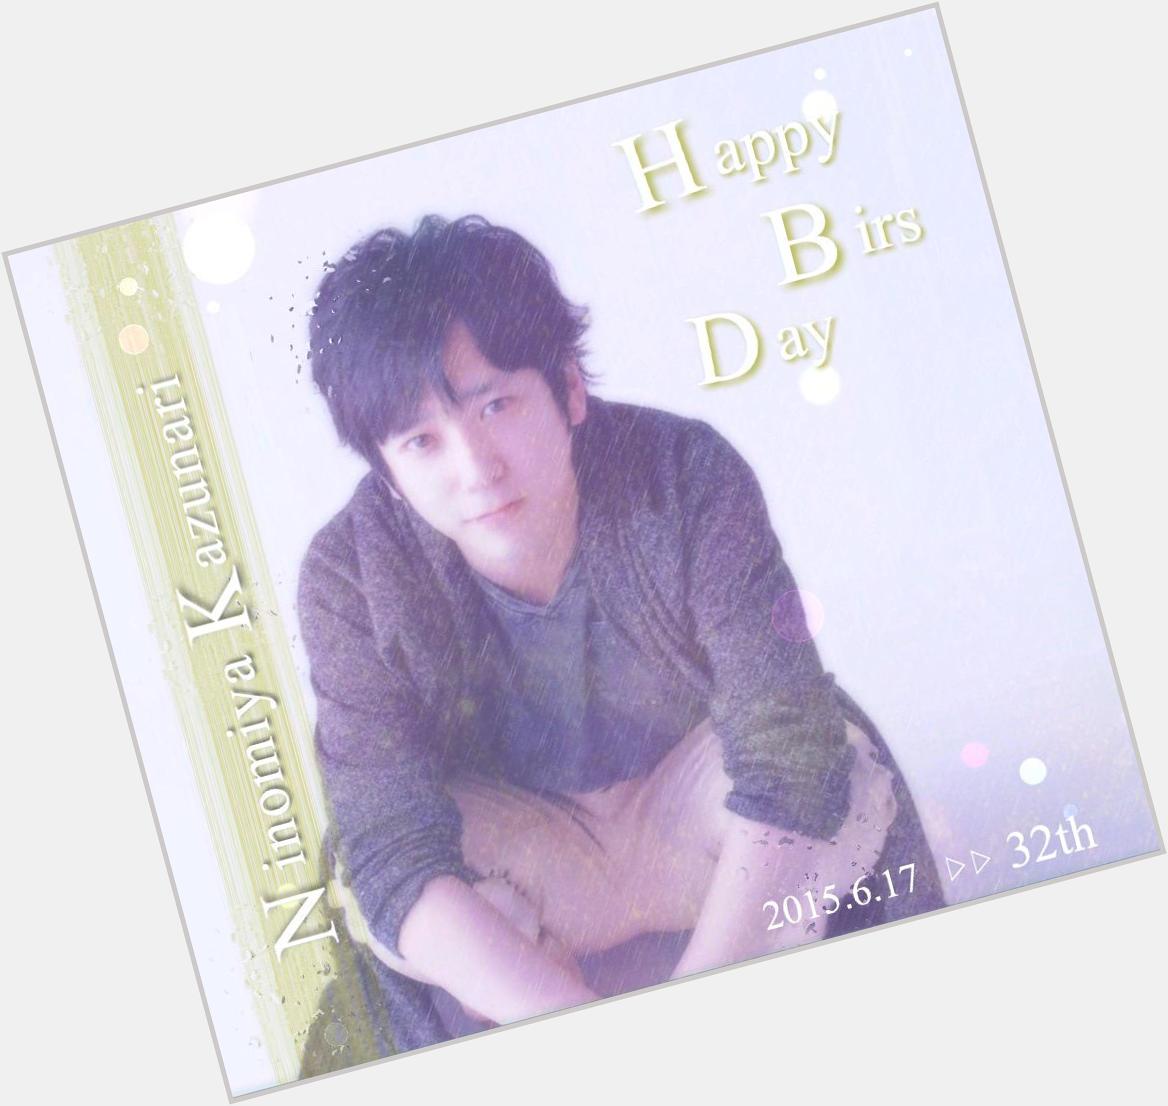 Happy Birthday  Kazunari Ninomiya                           2015.6.17 32th  